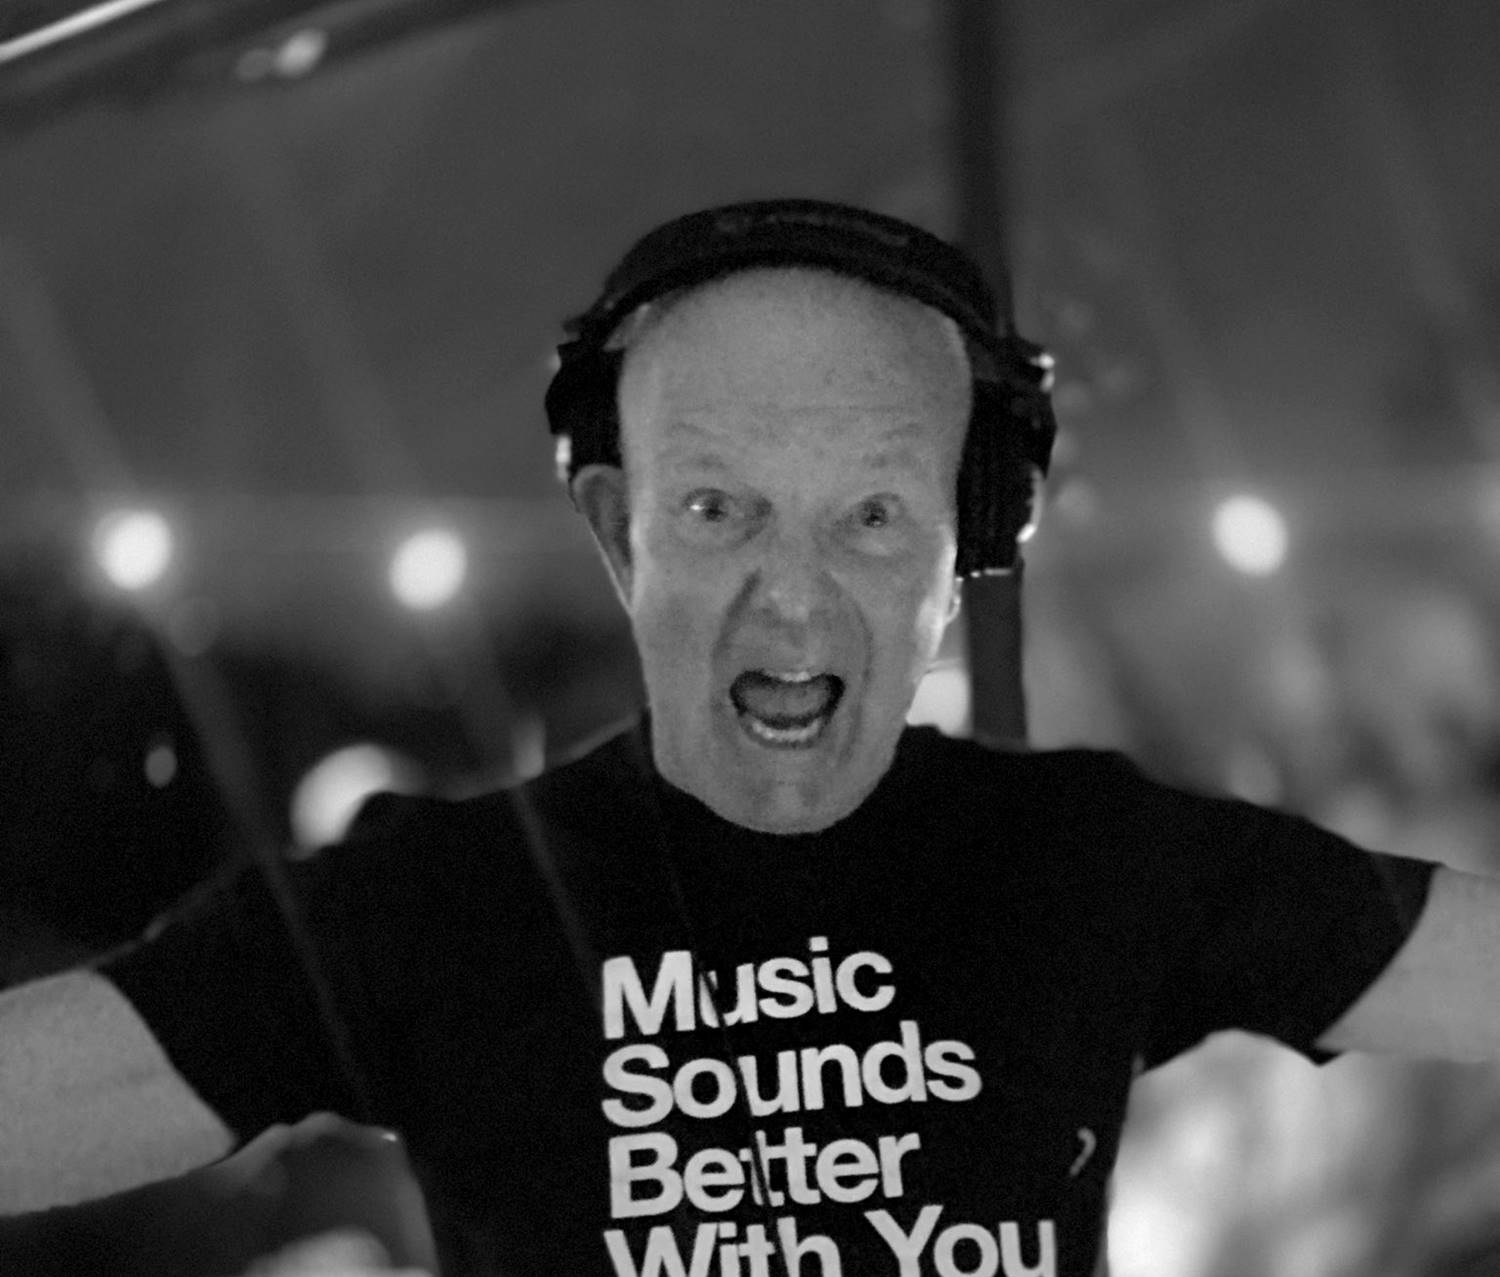 Preminuo je Stju Alan, britanski DJ i pionir elektronske muzike